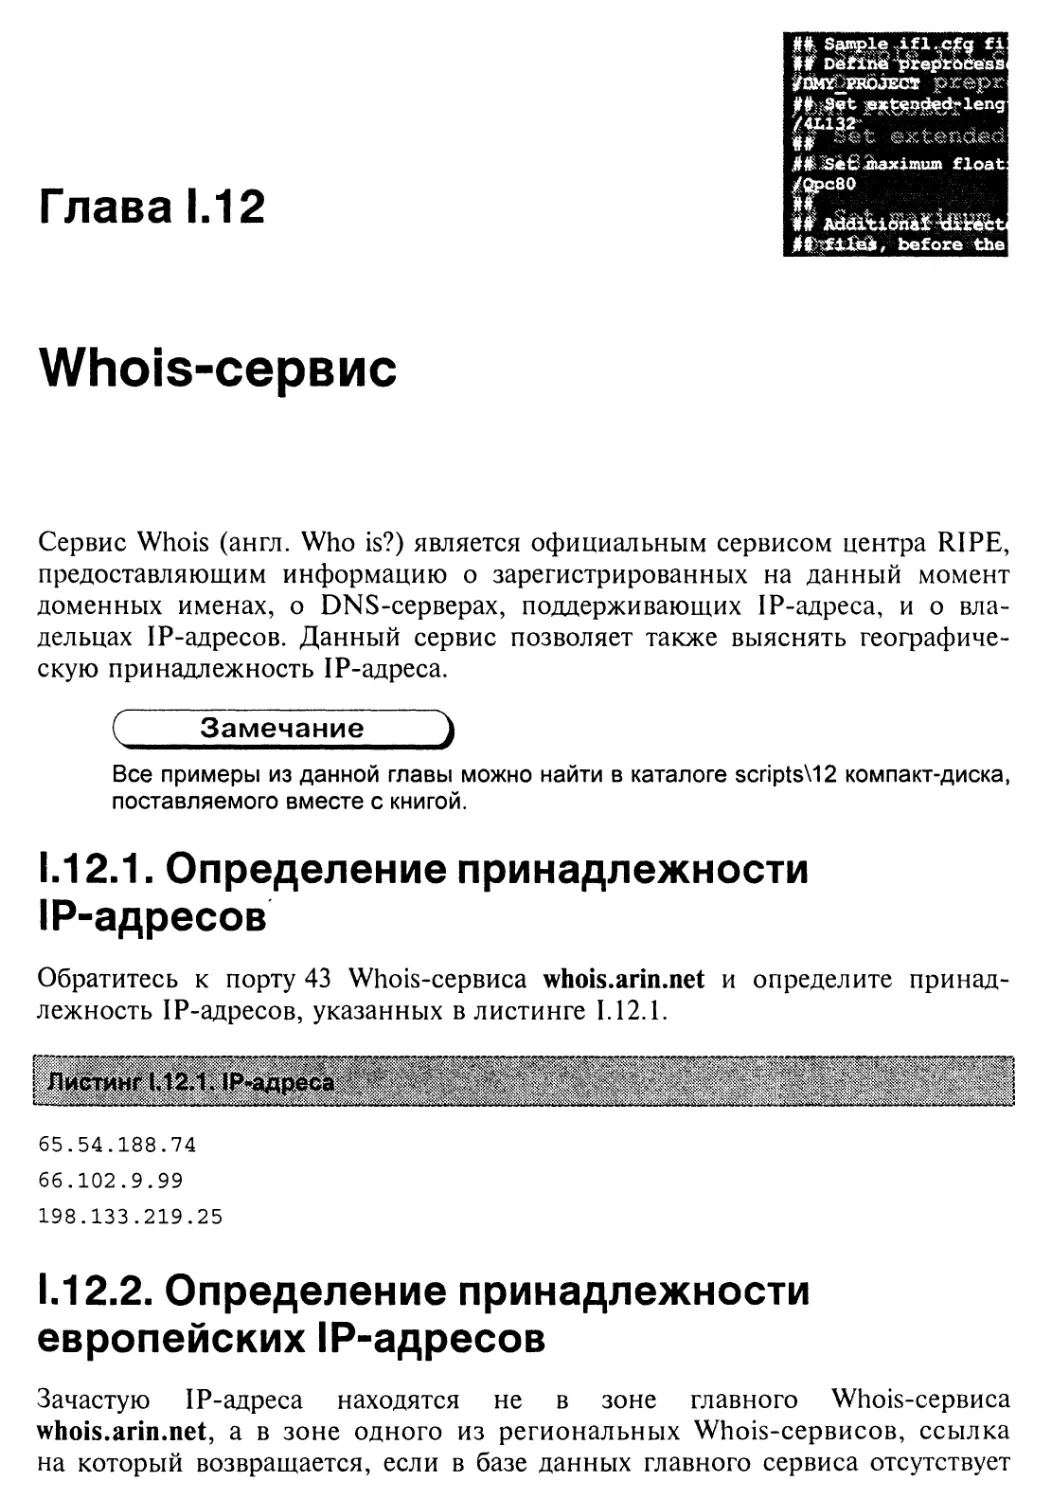 Глава 1.12. Whois-сервис
1.12.2. Определение принадлежности европейских IP-адресов